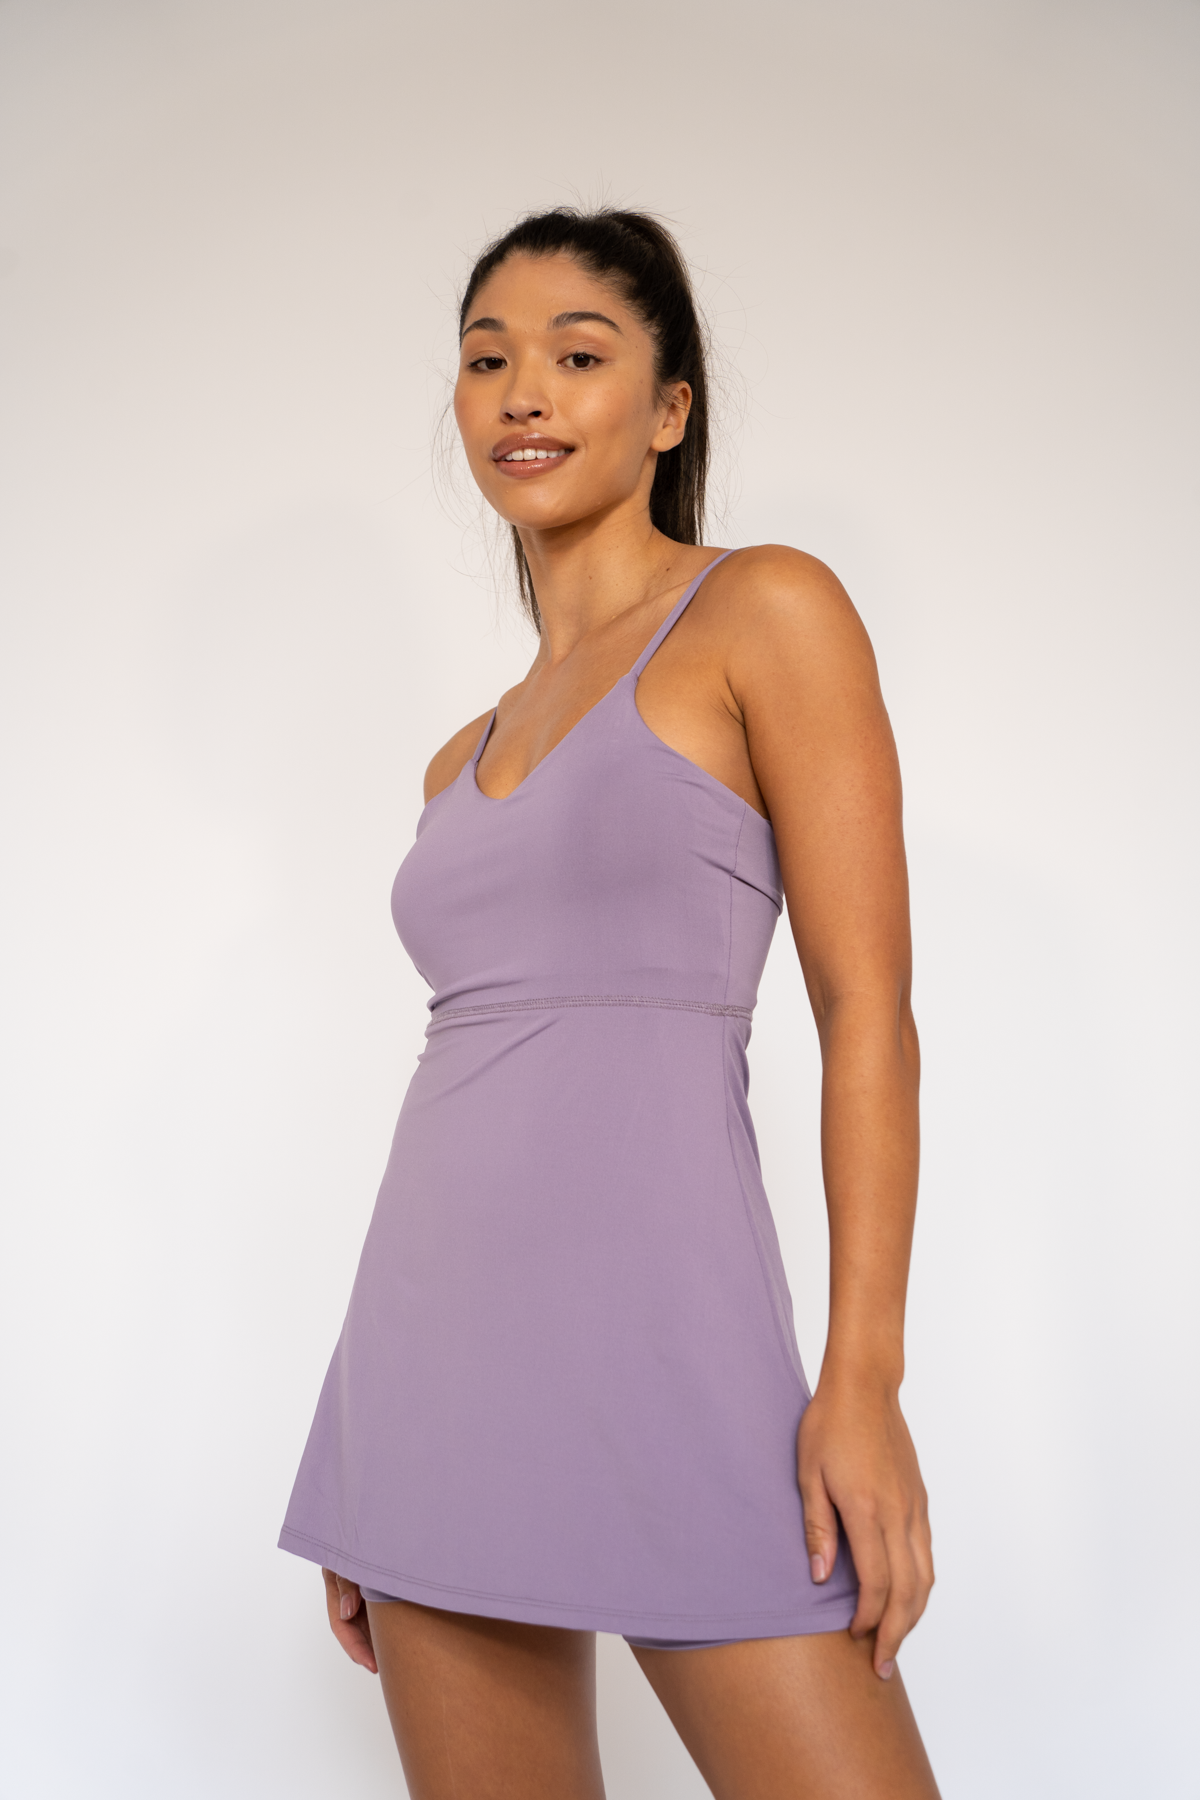 Jade Strappy Dress Heirloom lilac XS S M L XL